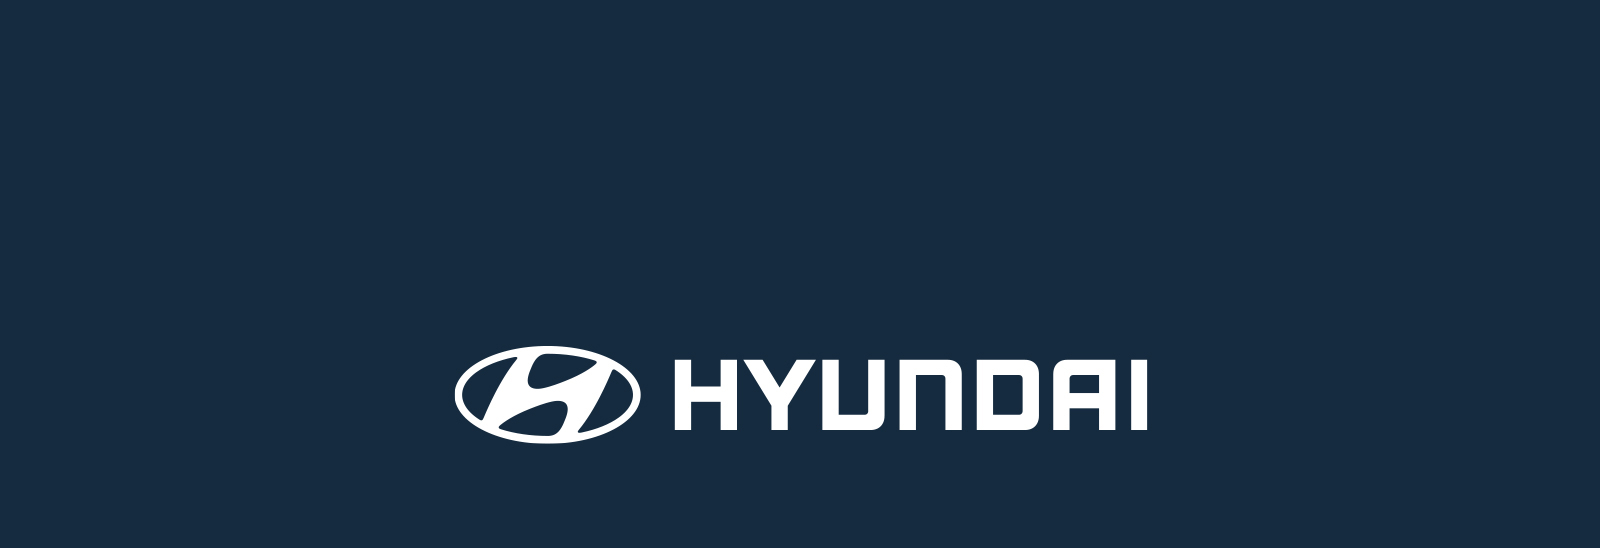 Logo blanco Hyundai sobre fondo azul